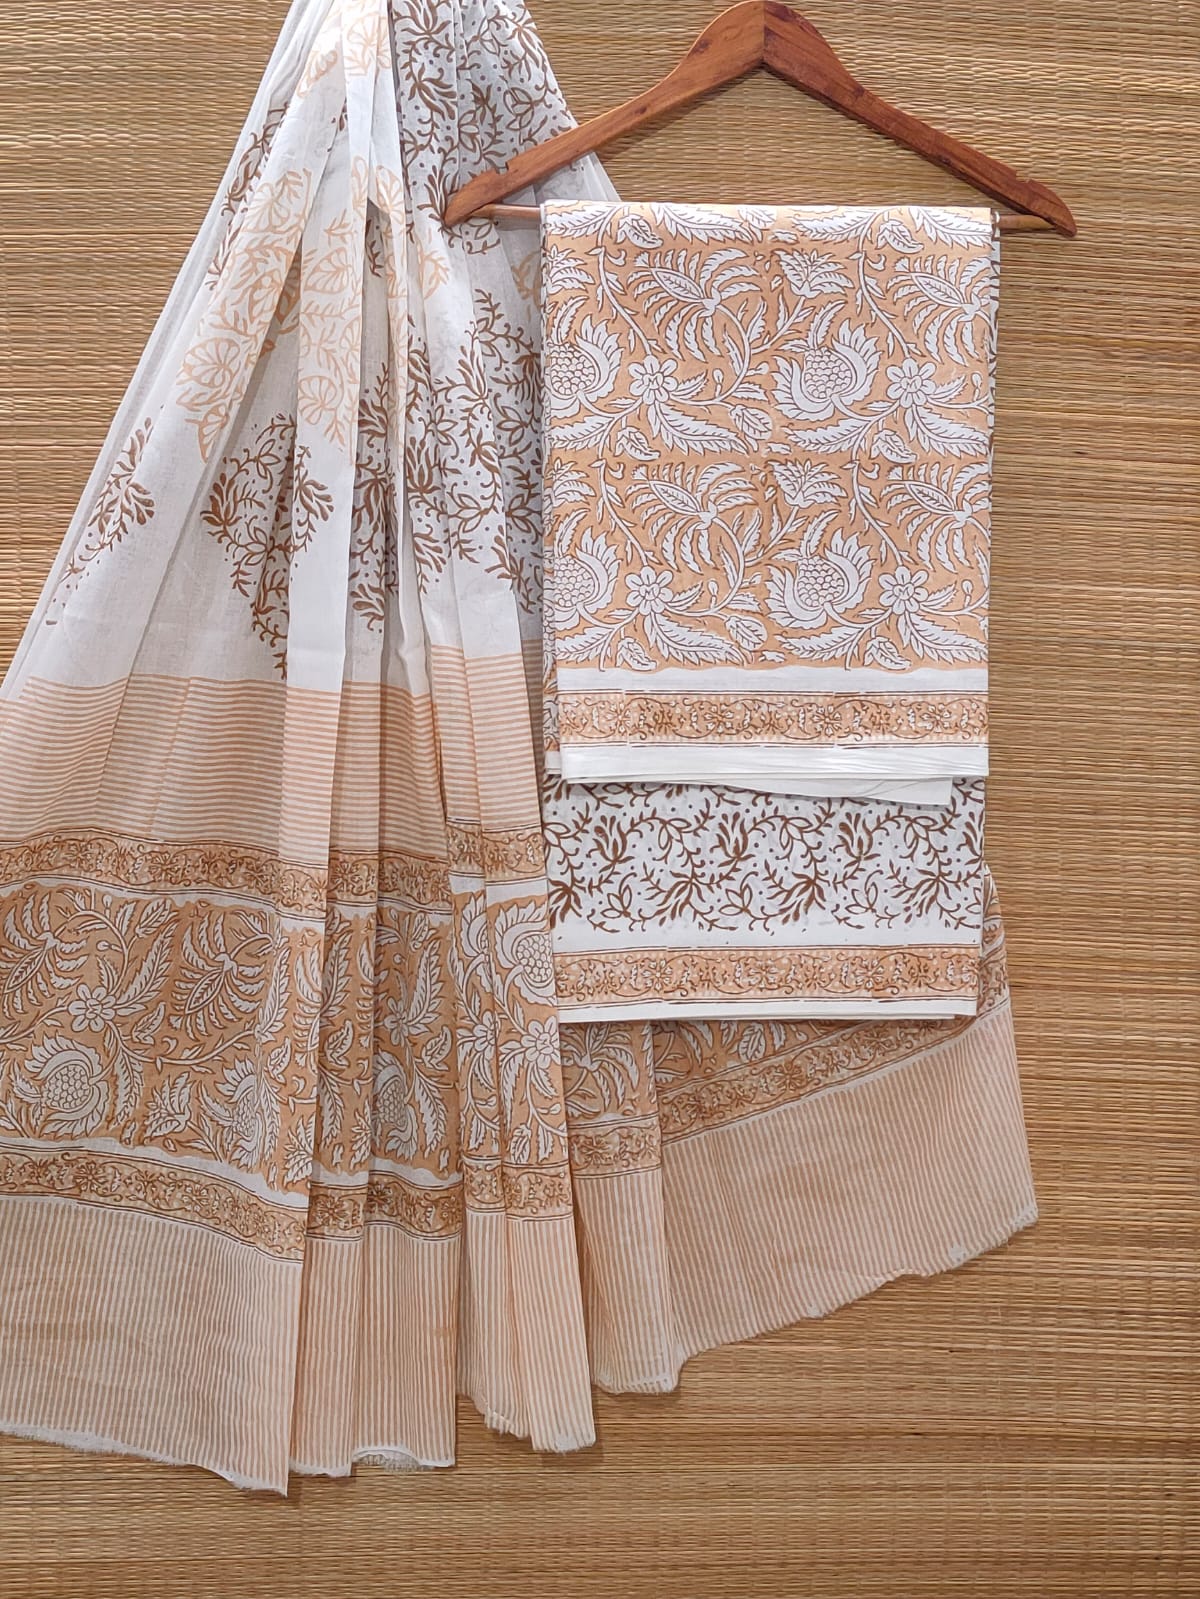 Hand Block Cotton Unstitched Salwar Suit With Cotton/Mulmul Dupatta - JBOCM162